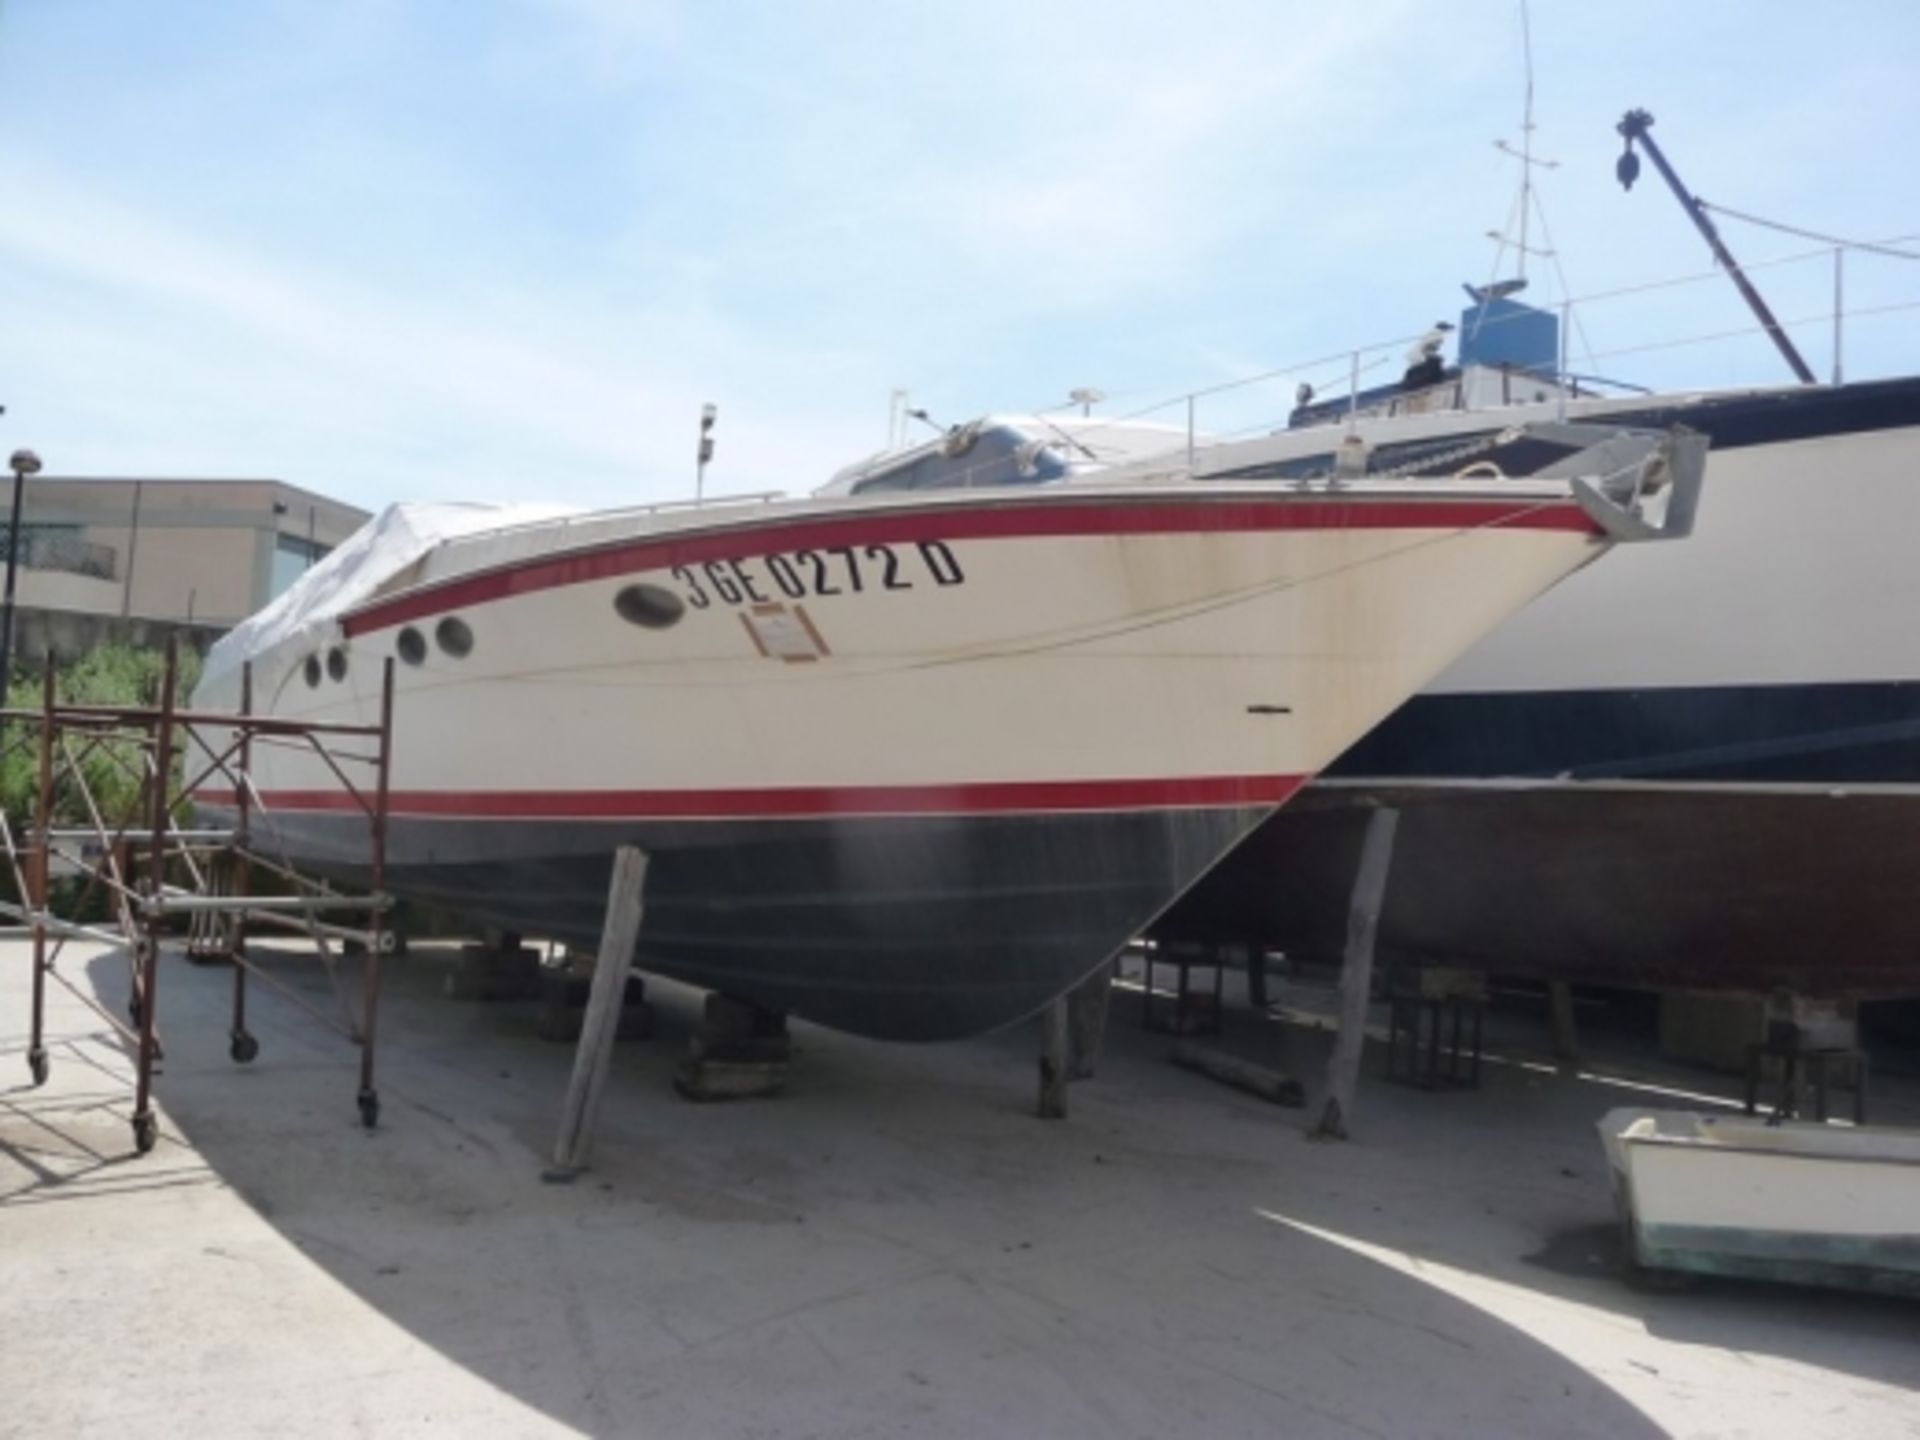 1,Motorised pleasure boat Profil Marine "Cheeroke 50", motorised boat, gross tonnage 11.79 tons;